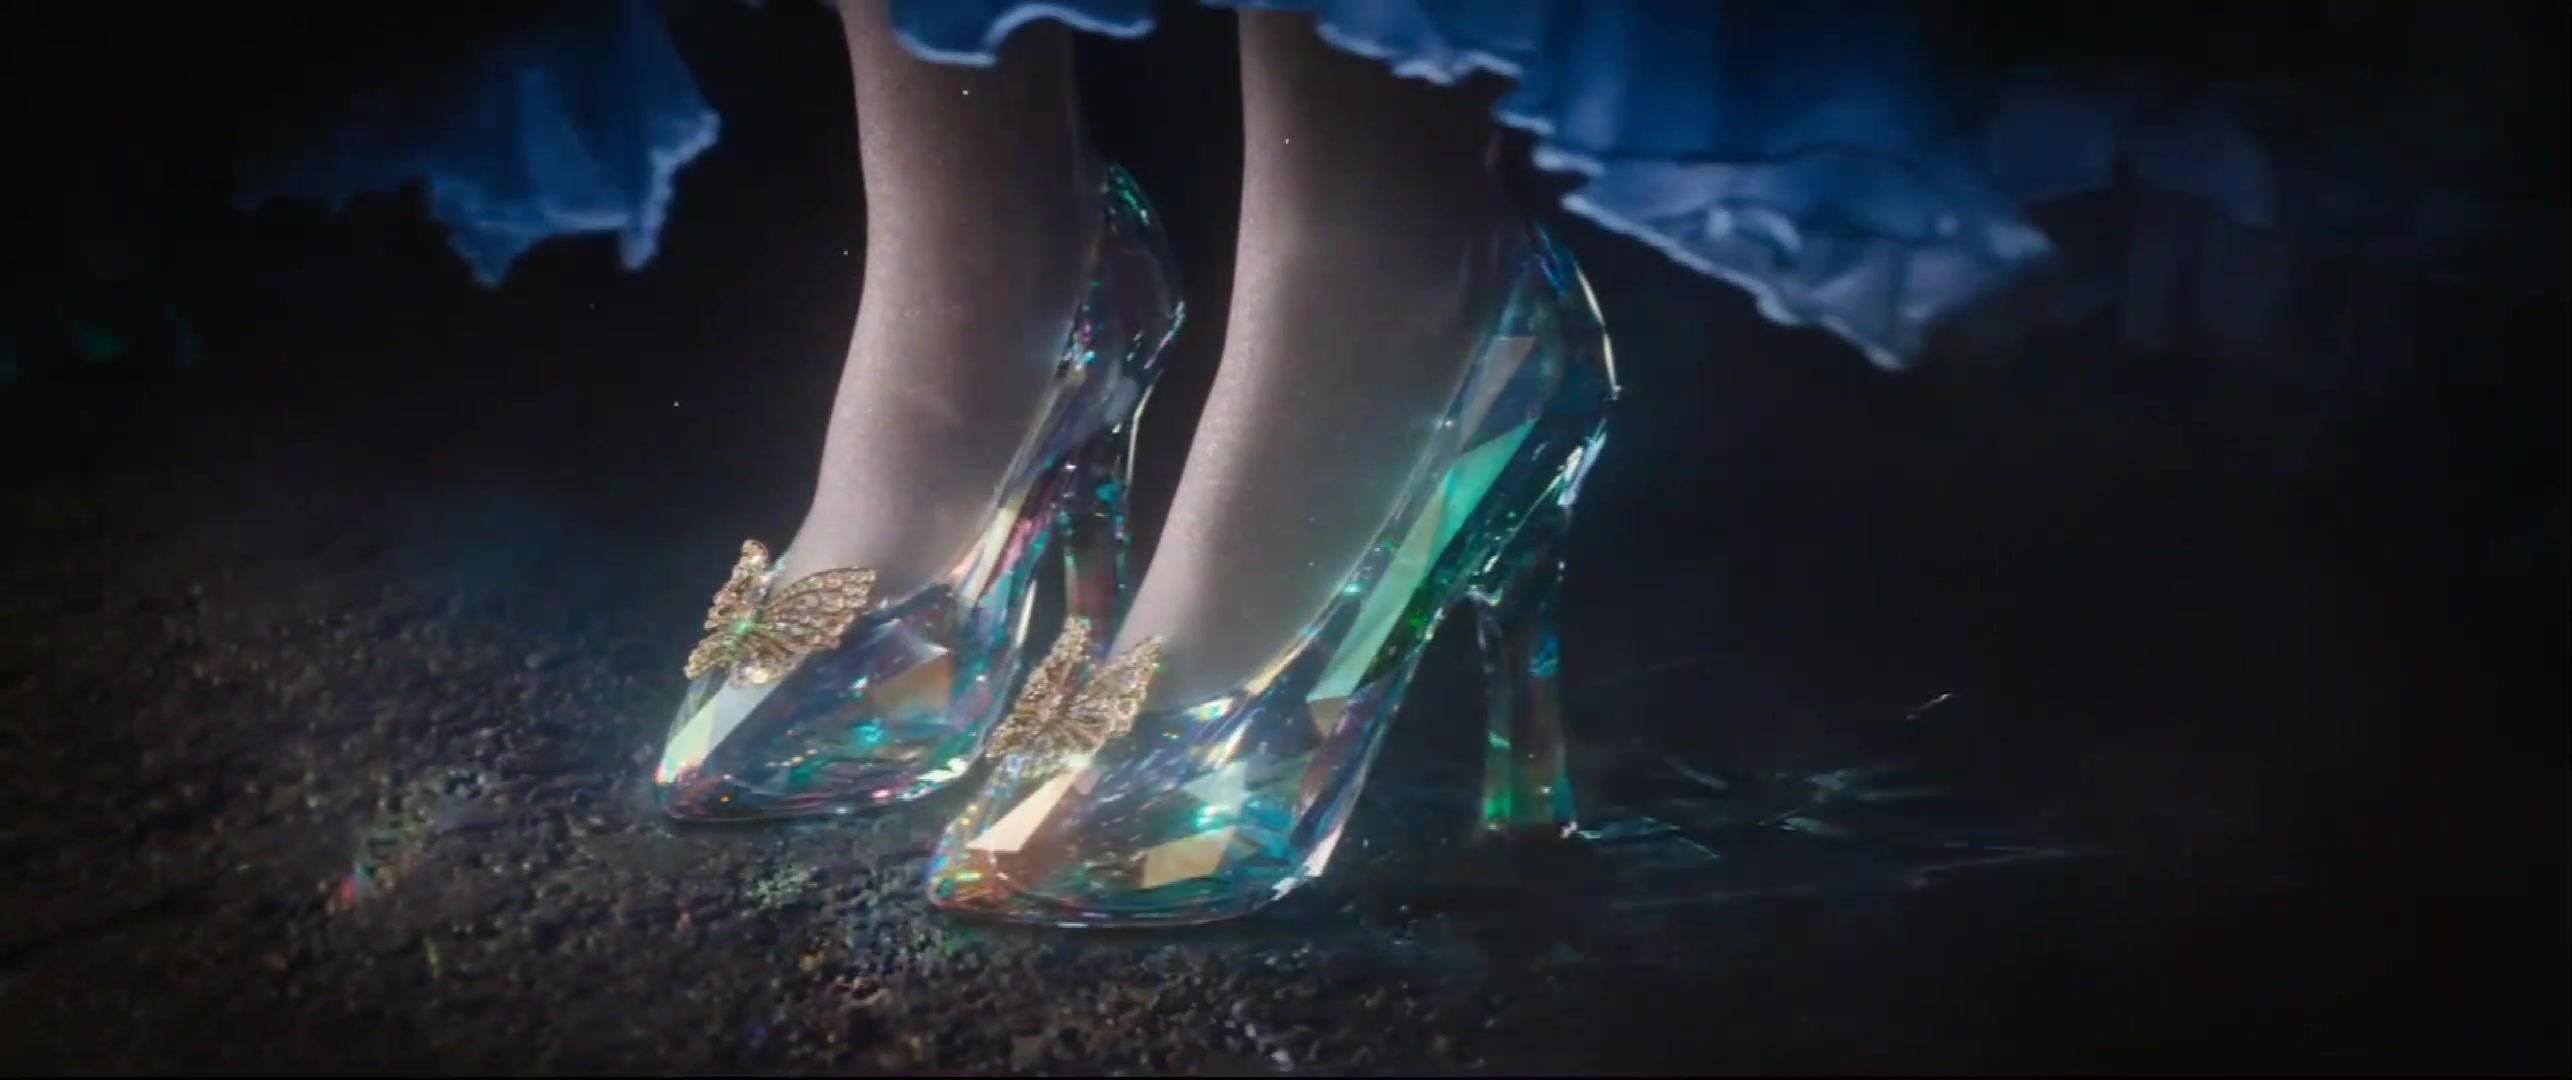 灰姑娘终于穿上了水晶鞋,这双鞋子大概是所有女孩的梦想吧!